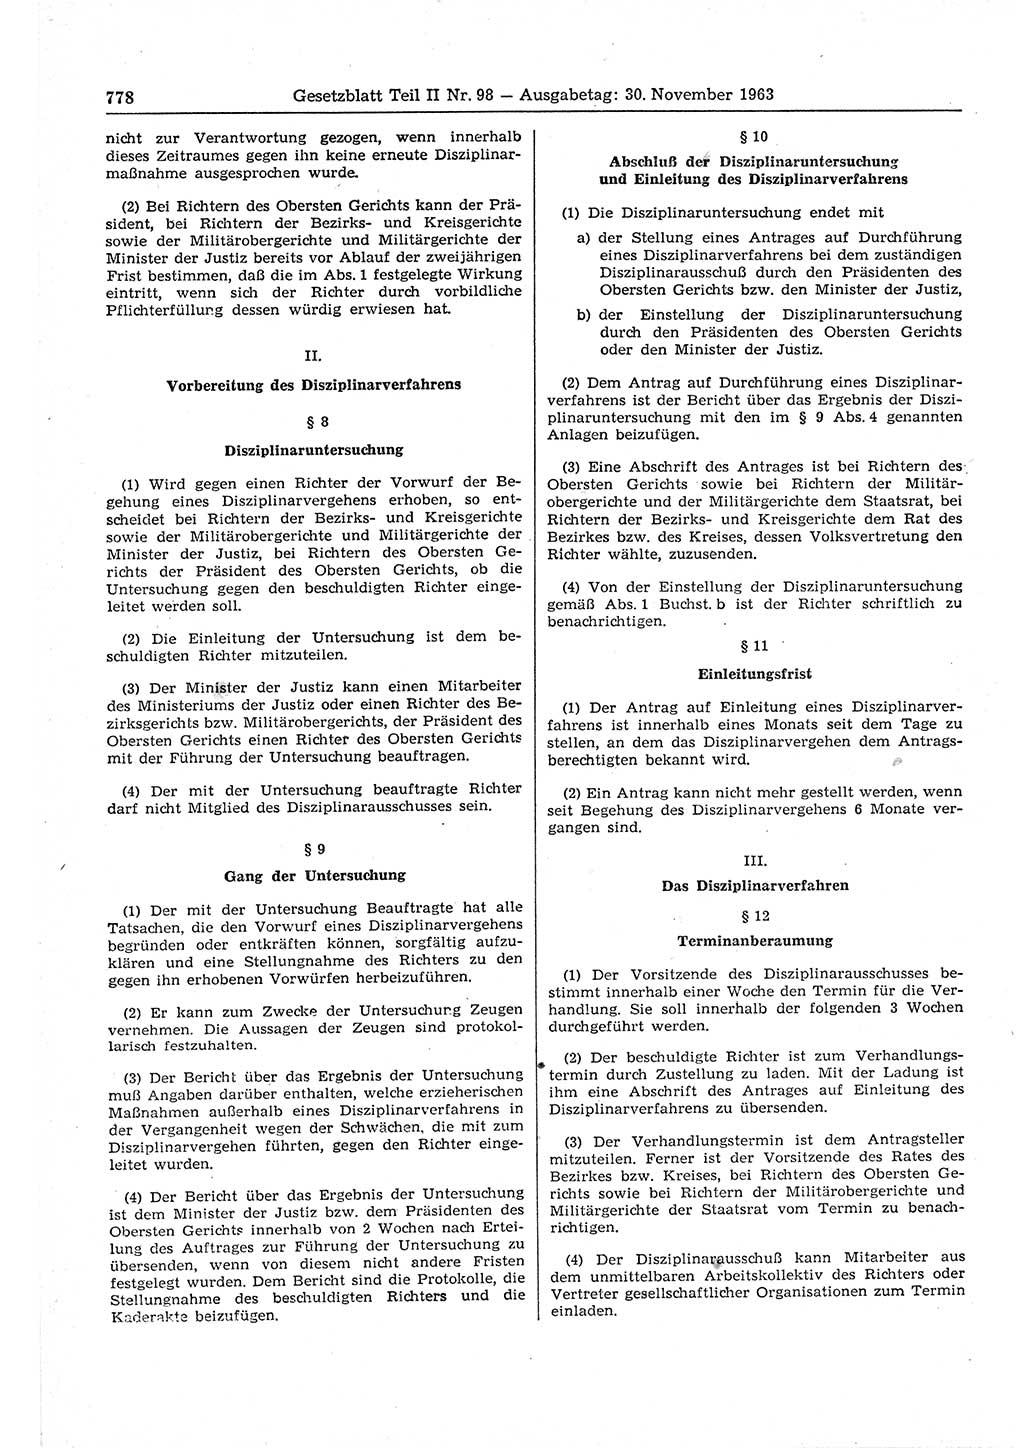 Gesetzblatt (GBl.) der Deutschen Demokratischen Republik (DDR) Teil ⅠⅠ 1963, Seite 778 (GBl. DDR ⅠⅠ 1963, S. 778)